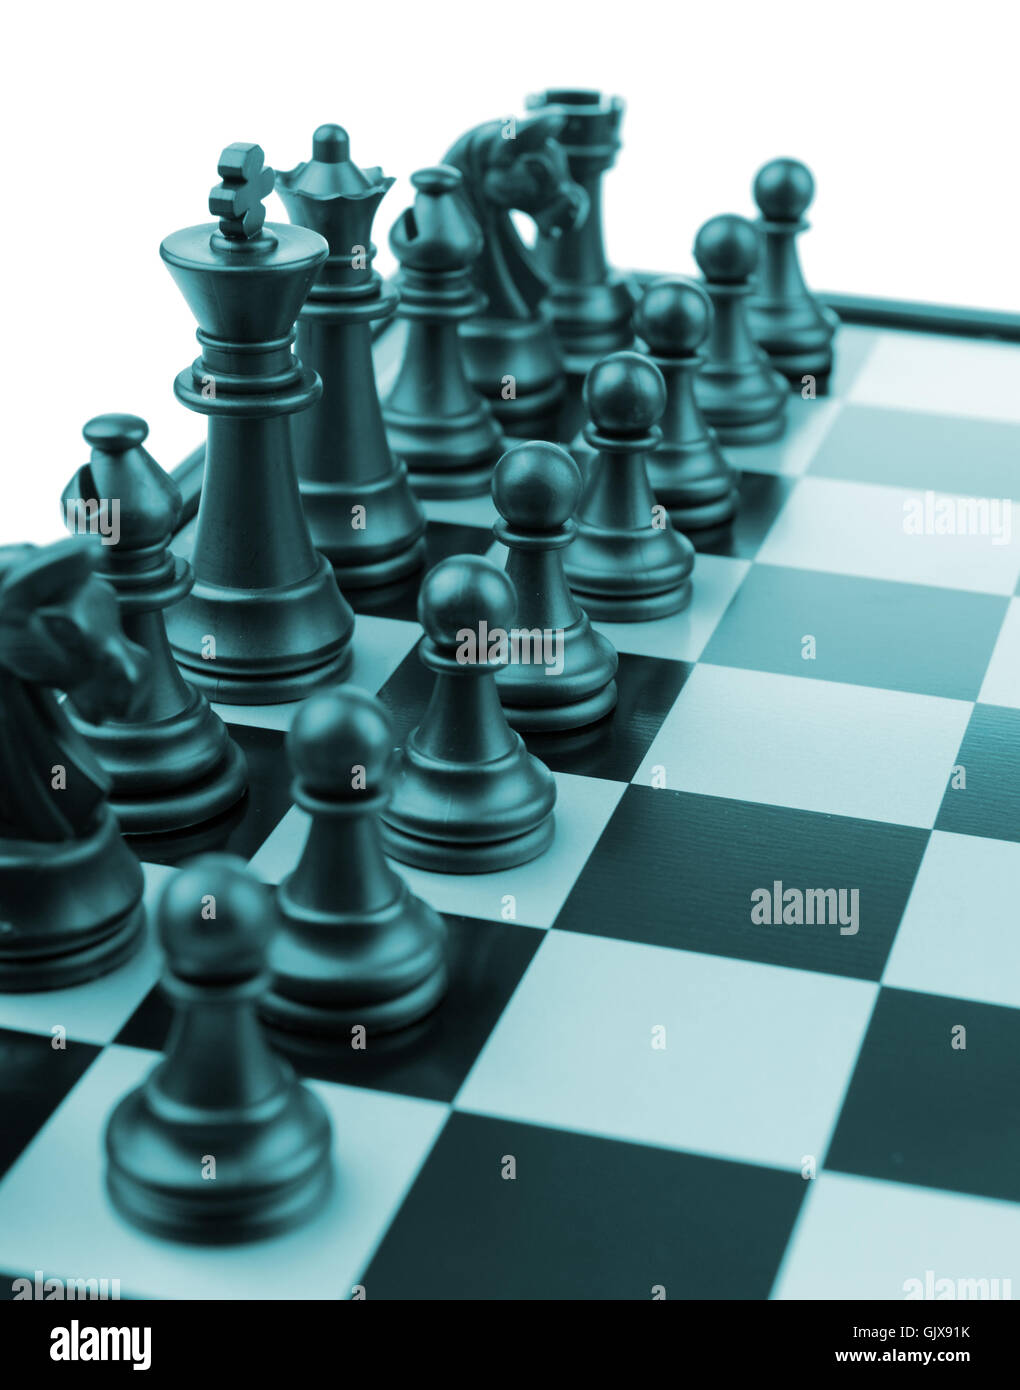 Chess. Stock Photo